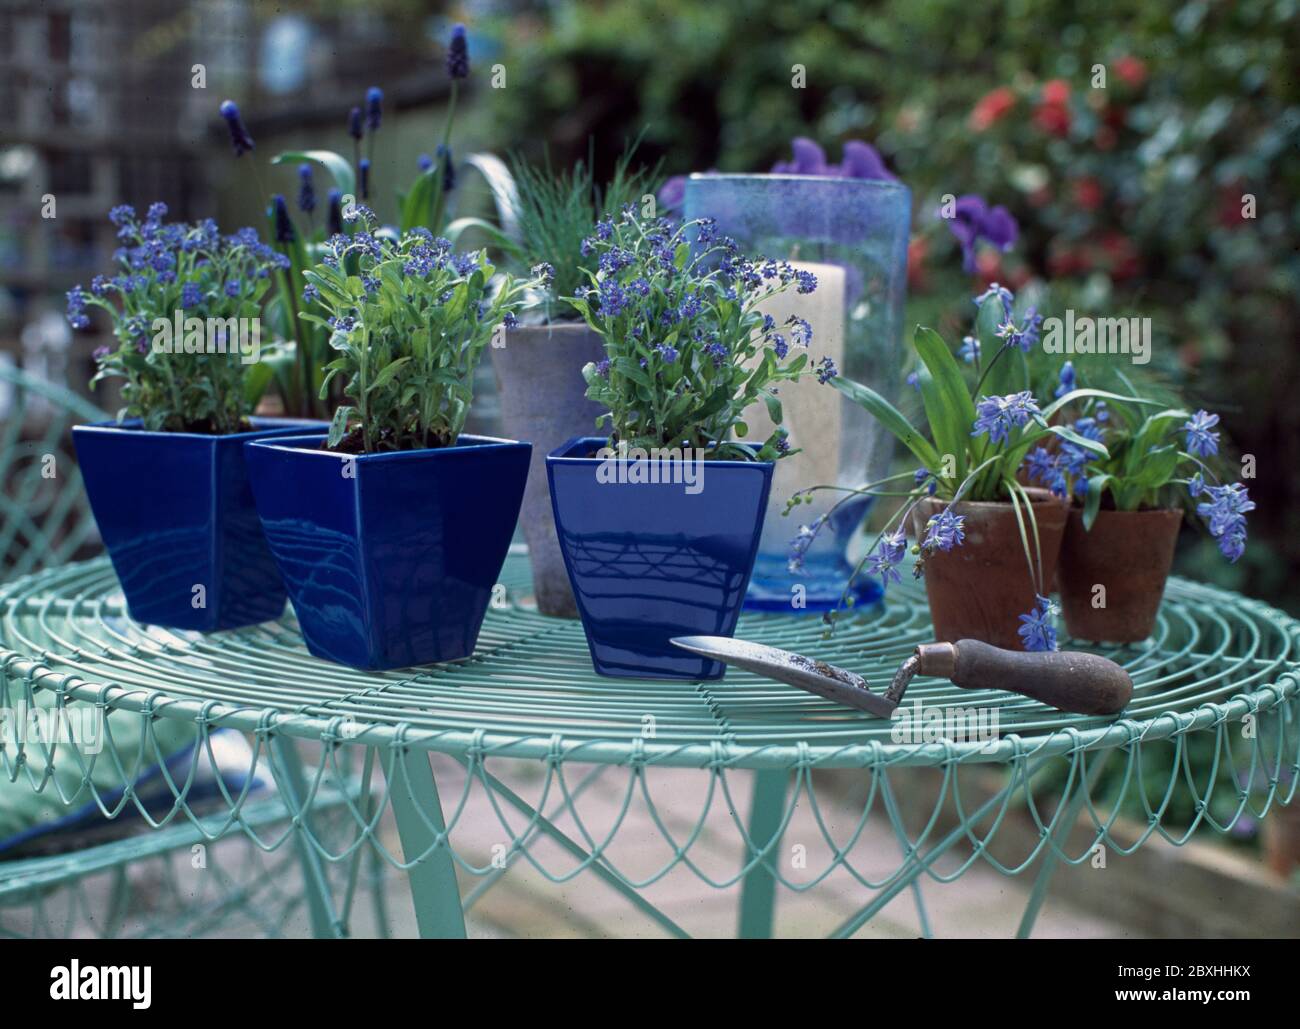 Vasetti blu cermaico con piante blu su tavola verde metallo giardino Foto Stock